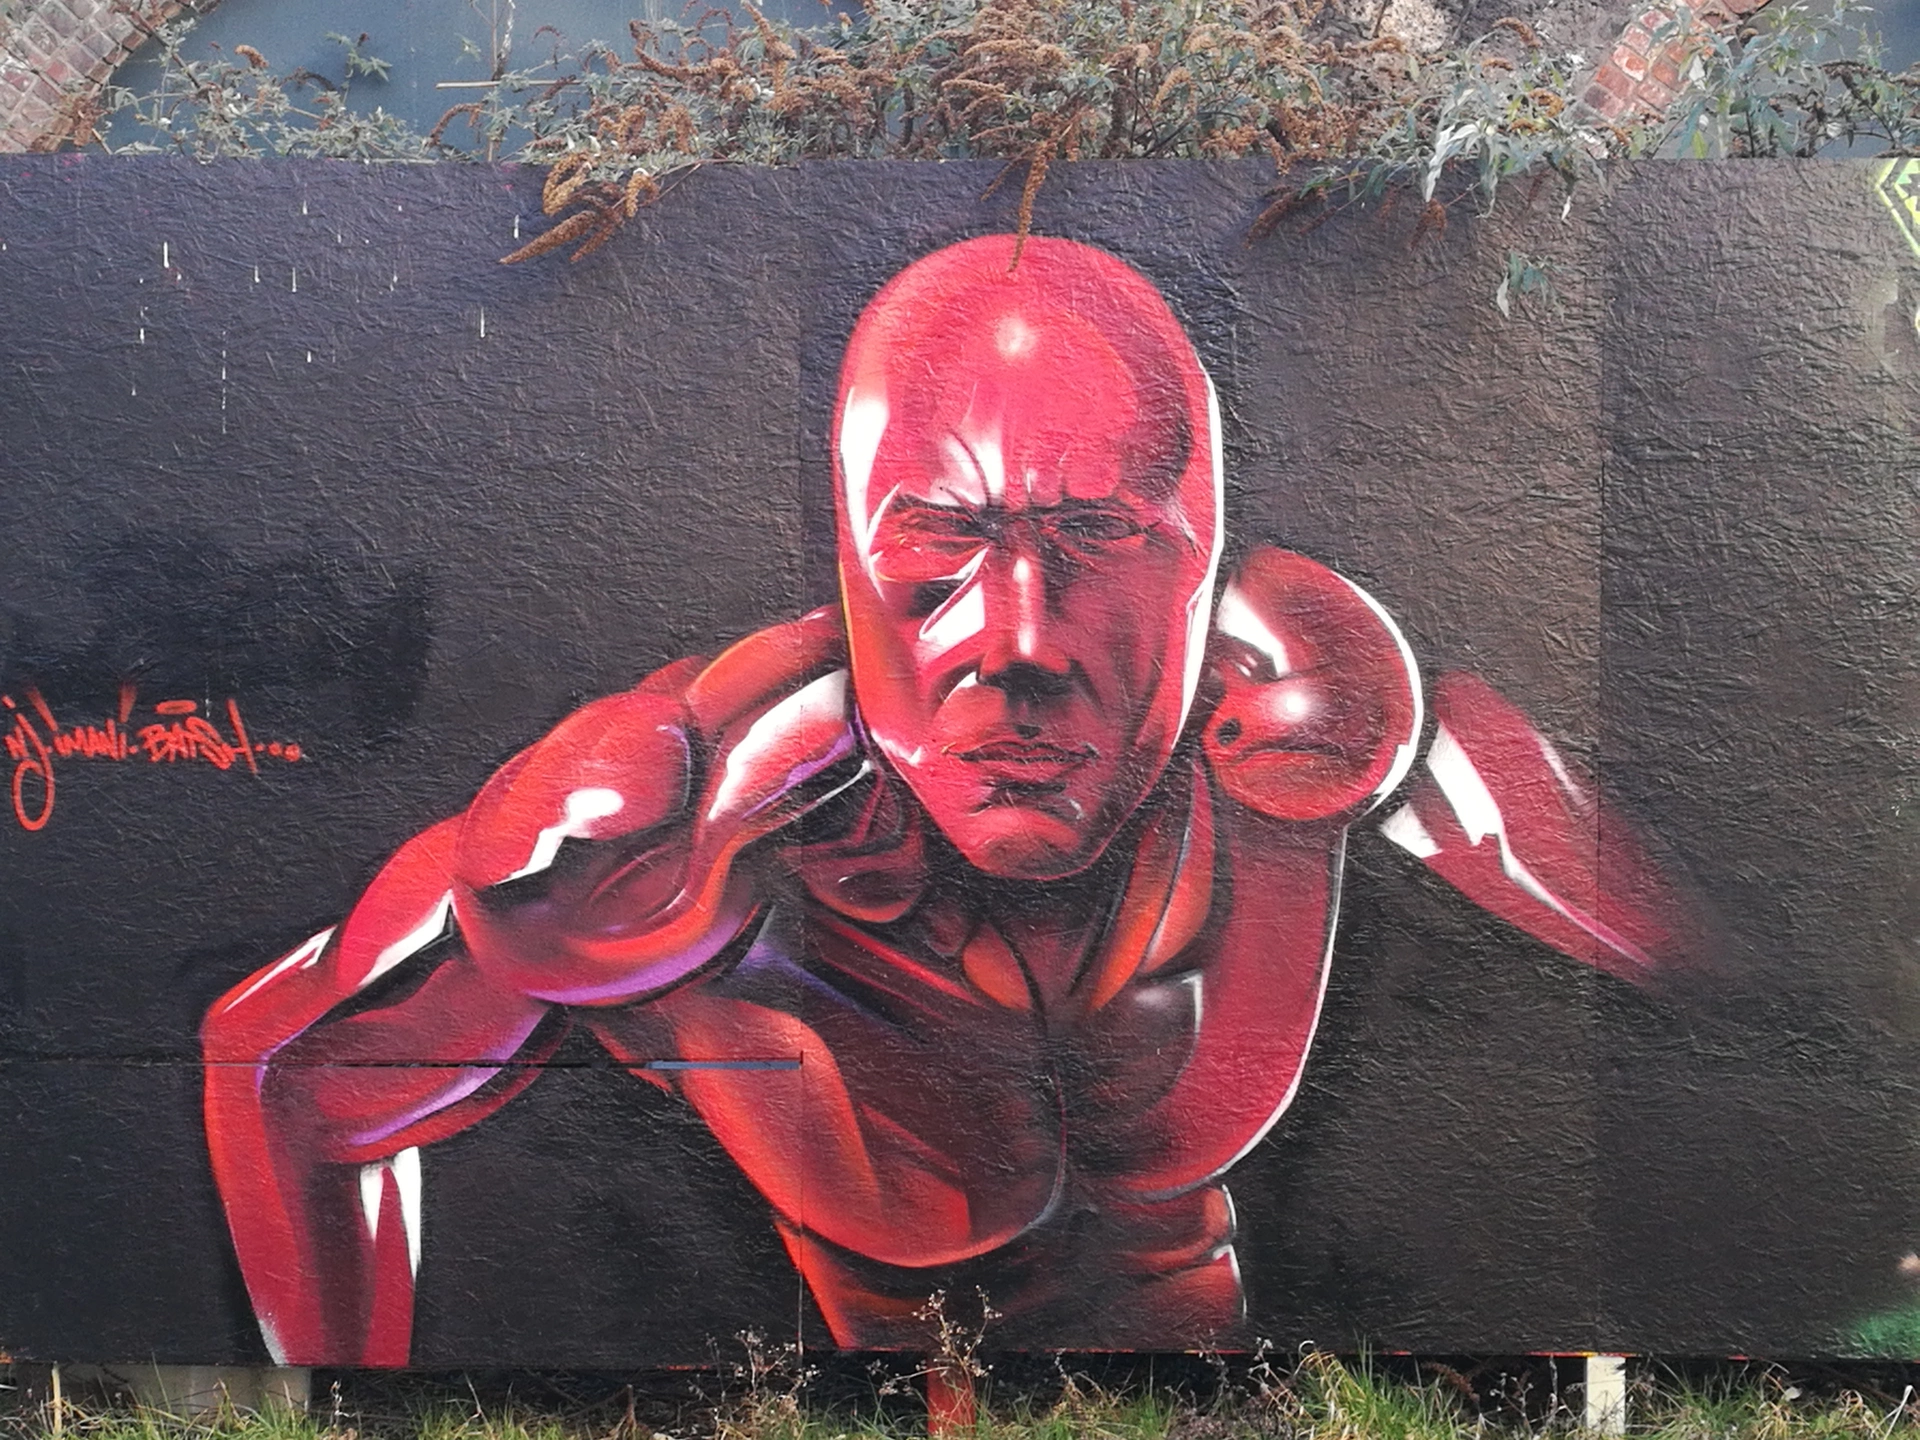 Oeuvre de Street Art réalisée par Batsh à Paris